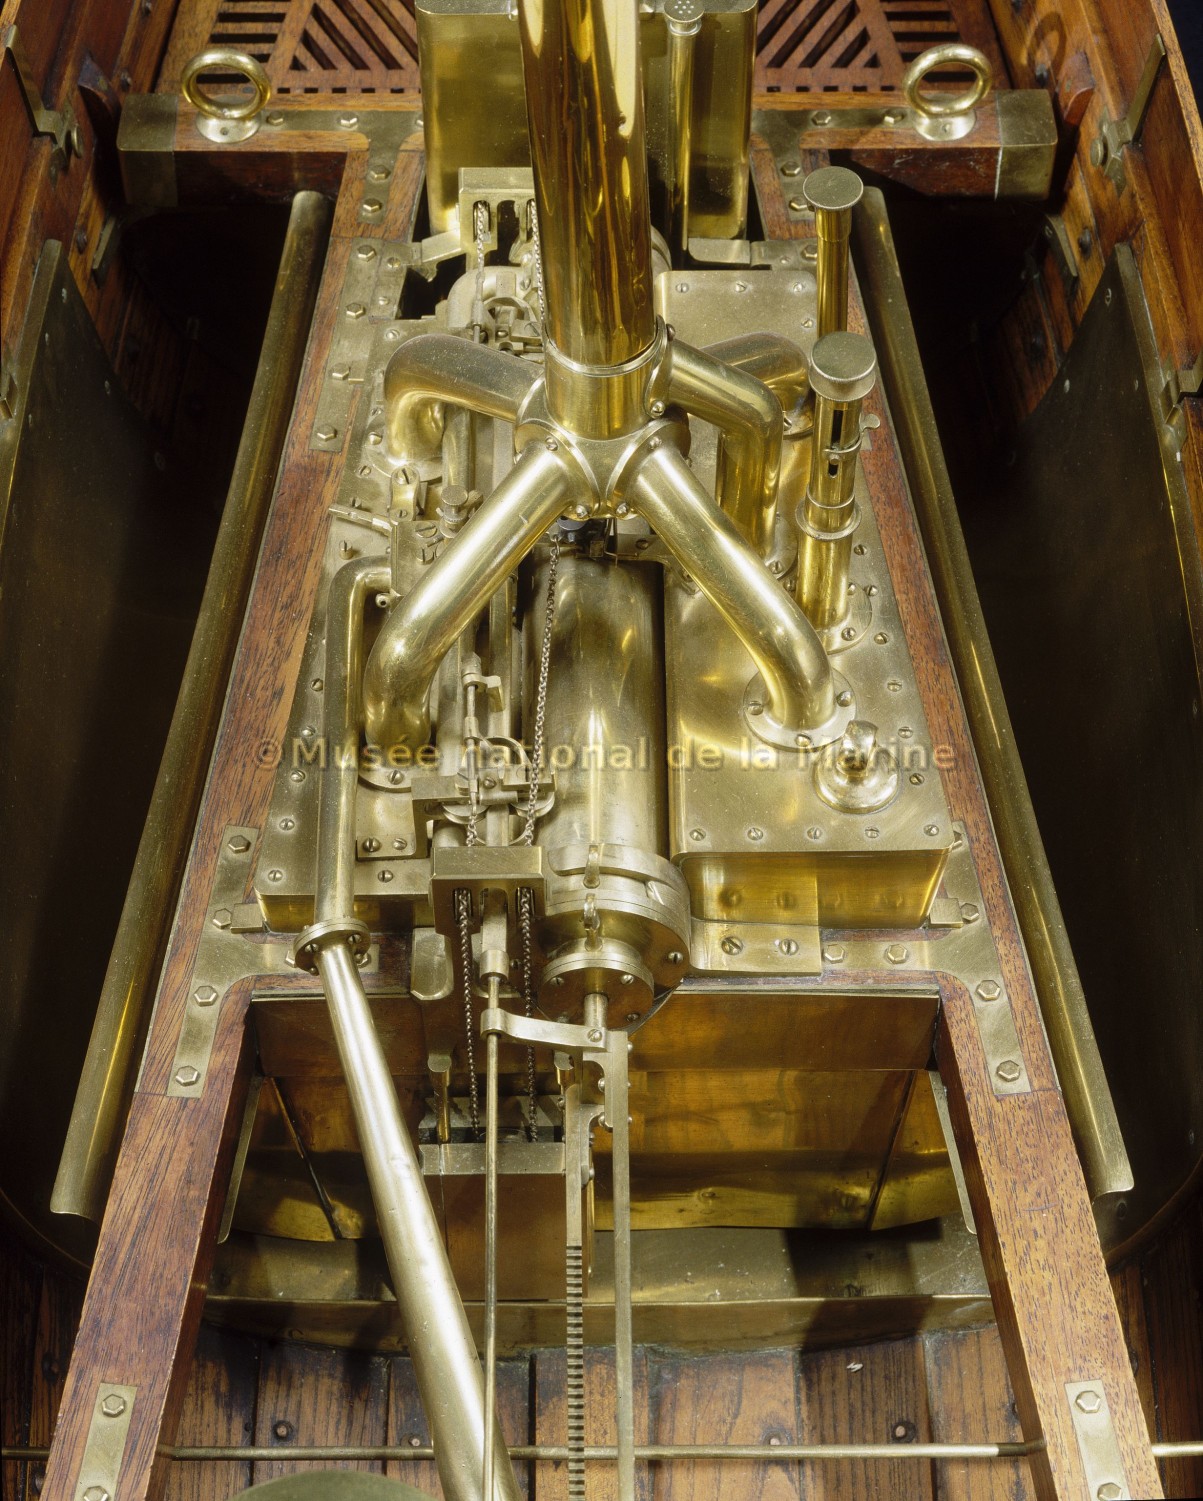 Bateau à vapeur ou pyroscaphe de Jouffroy d'Abbans, chaudière et cylindre-moteur